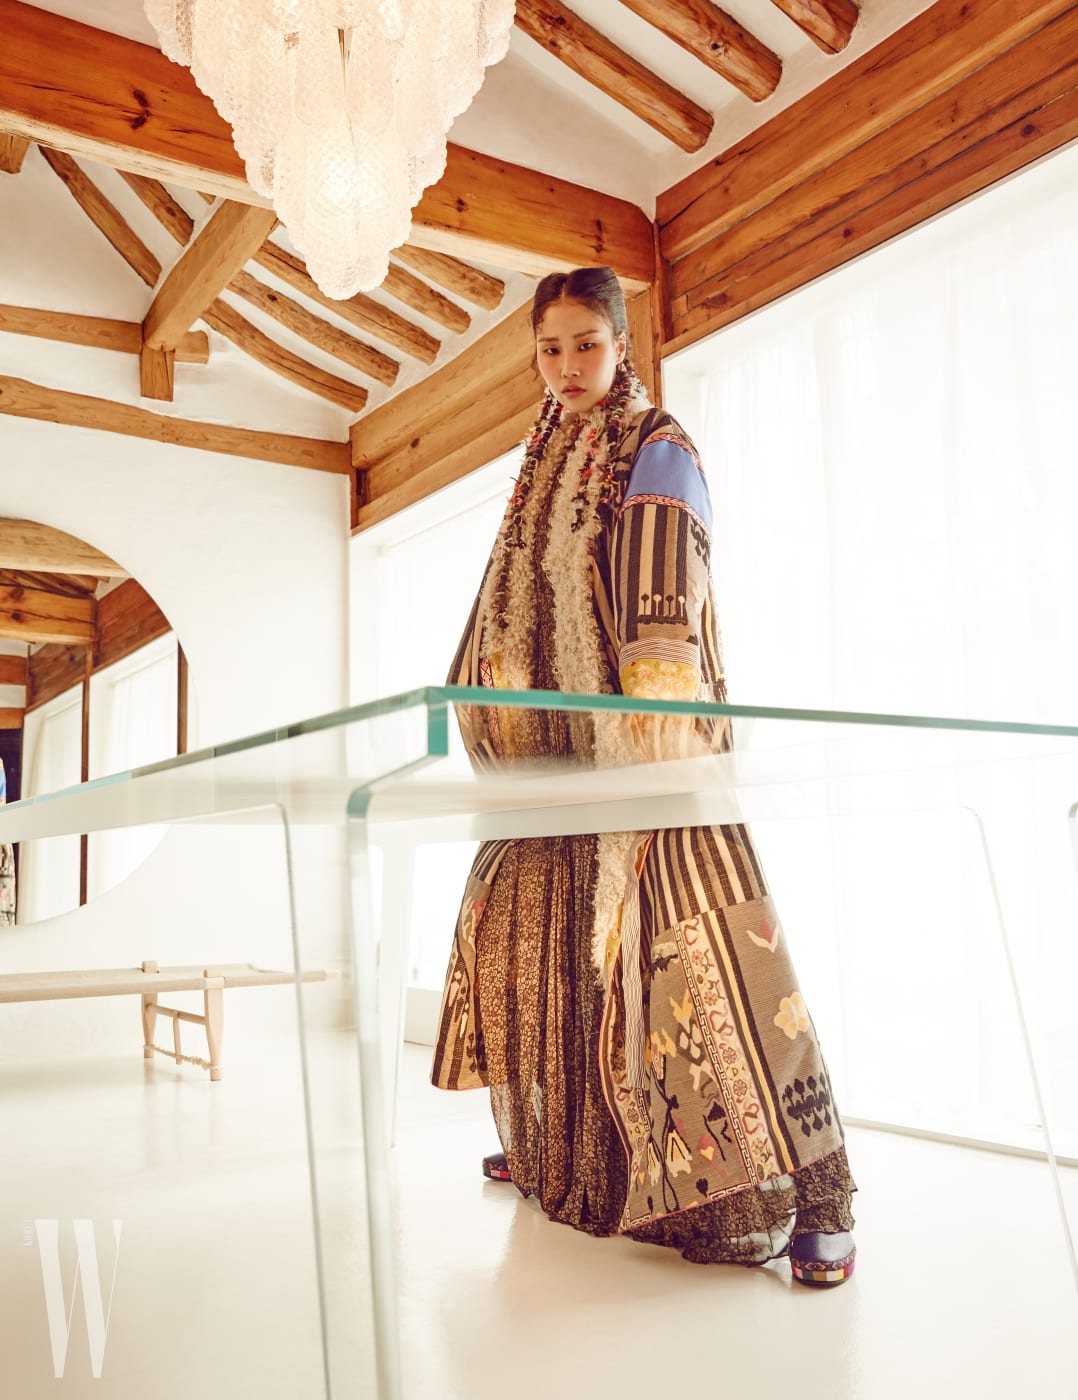 티베트, 몽골 등 유목민의 이국적인 정서가 담긴 롱 코트, 잔잔한 꽃무늬를 새긴 롱 드레스, 티베트 깃발이 연상되는 컬러 장식 부츠는 모두 Etro 제품.